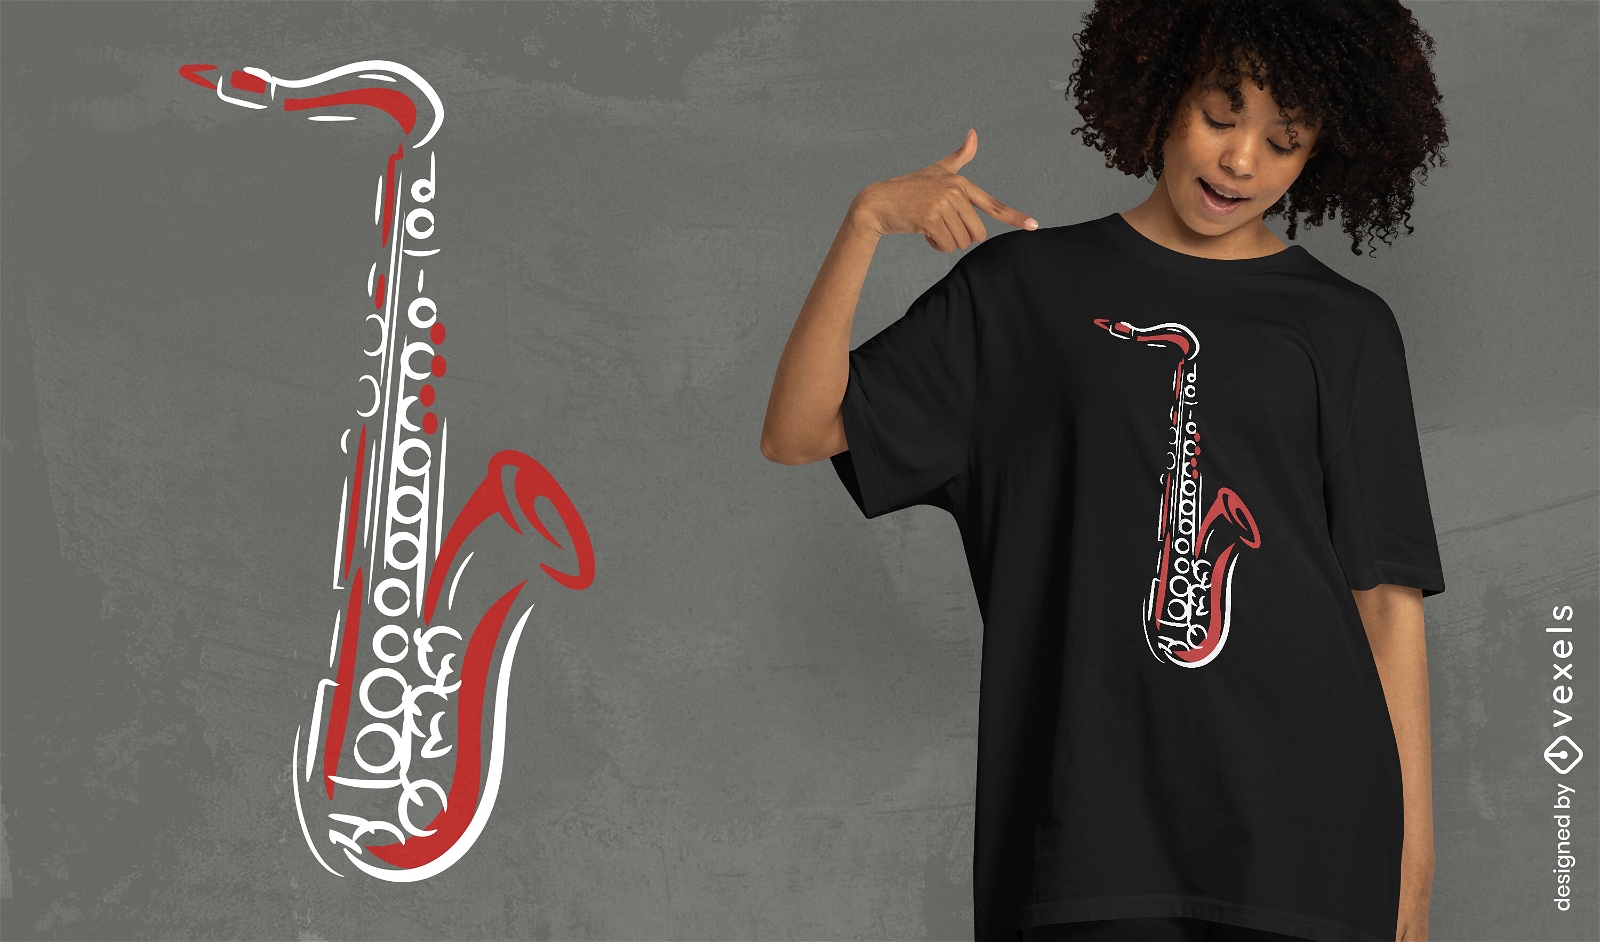 Design de camiseta com linhas musicais de saxofone